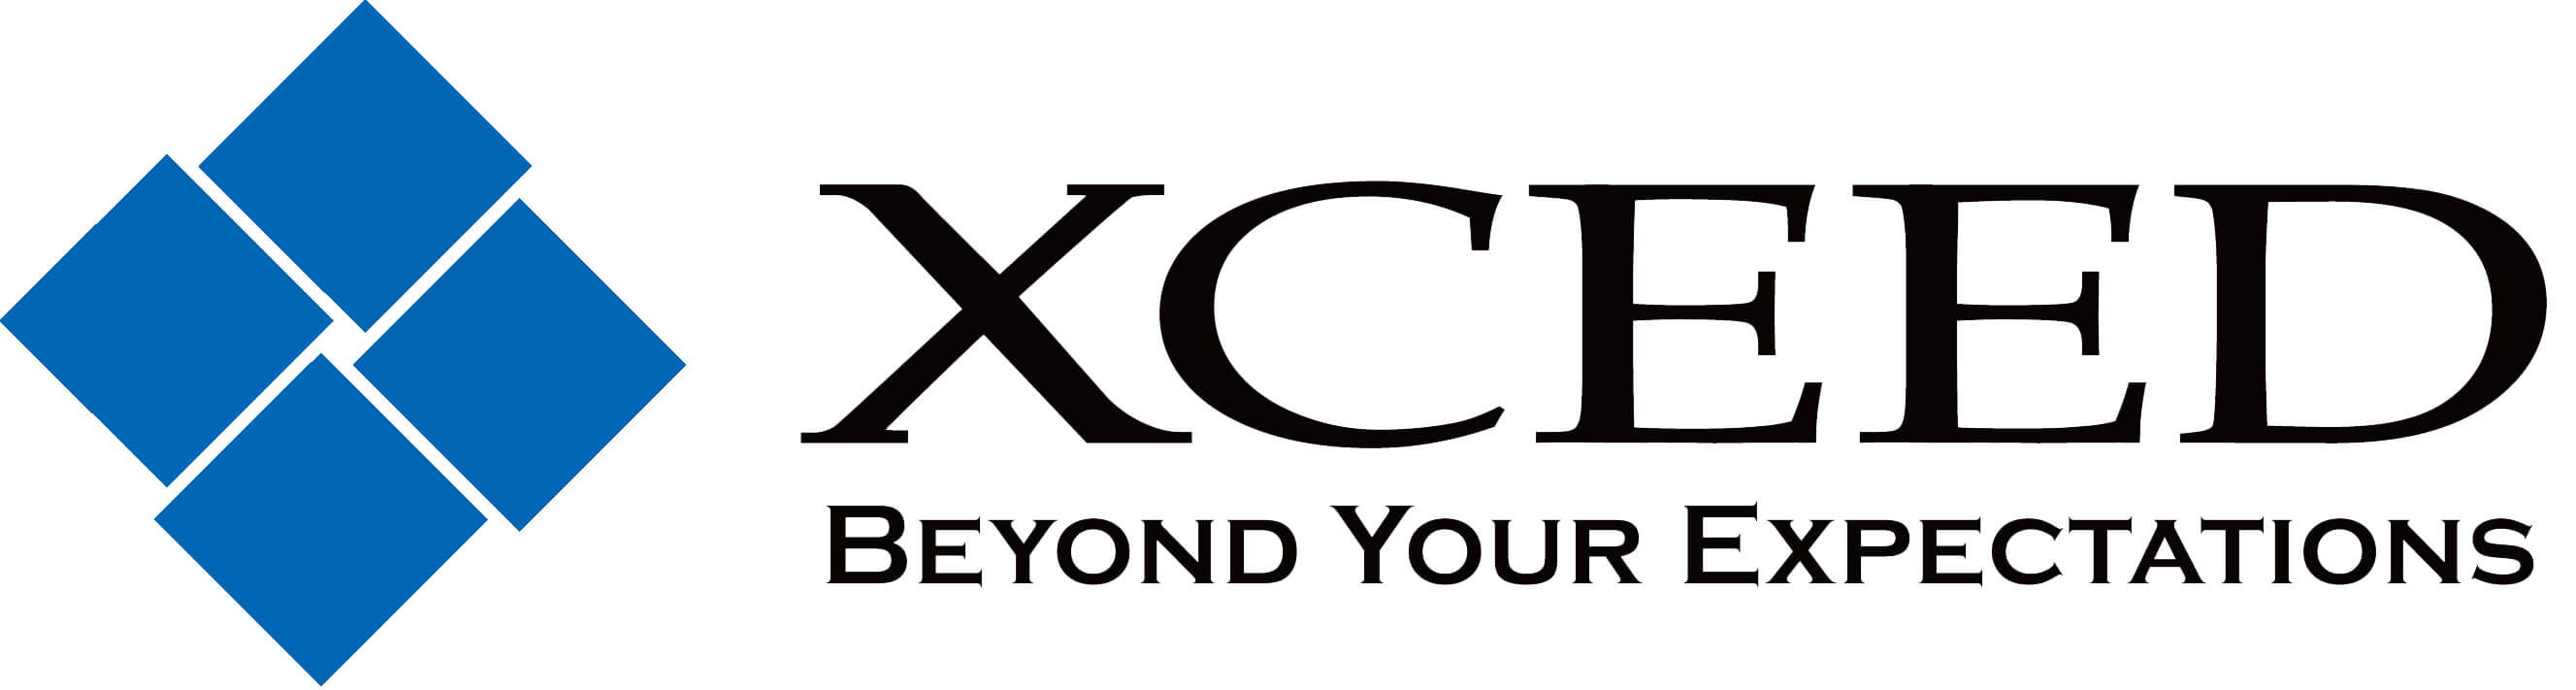 XCEED_logo